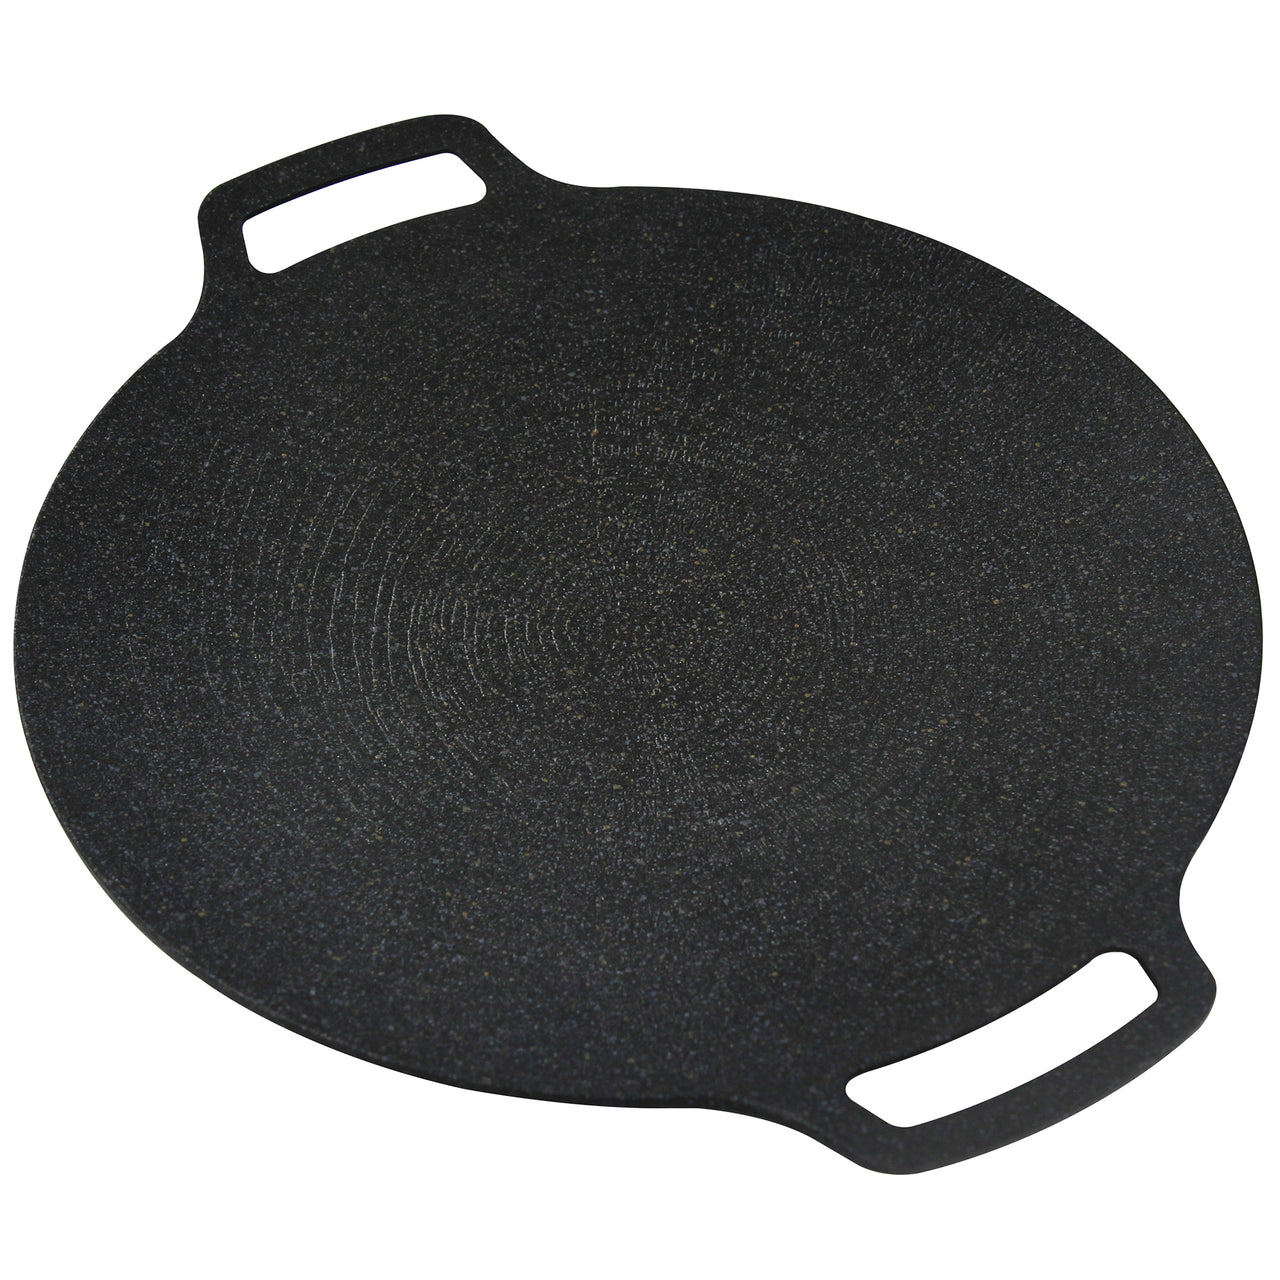 Black 36cm Cast Iron Griddle Pan